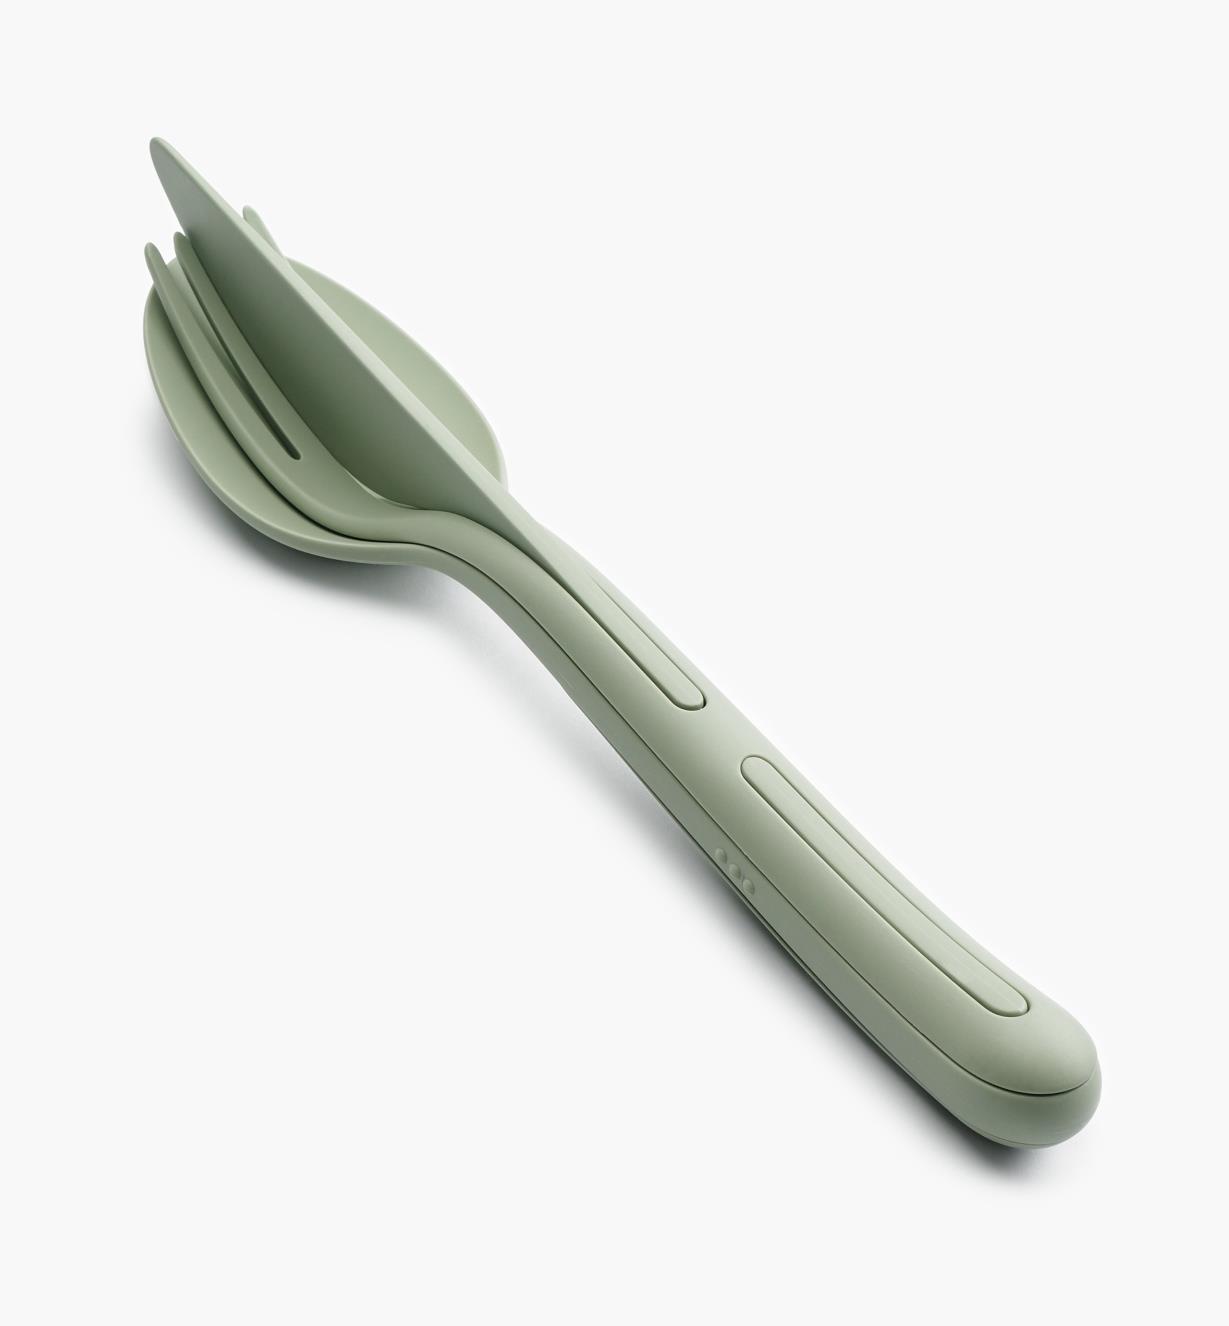 EV278 - Klikk Cutlery Set, Green